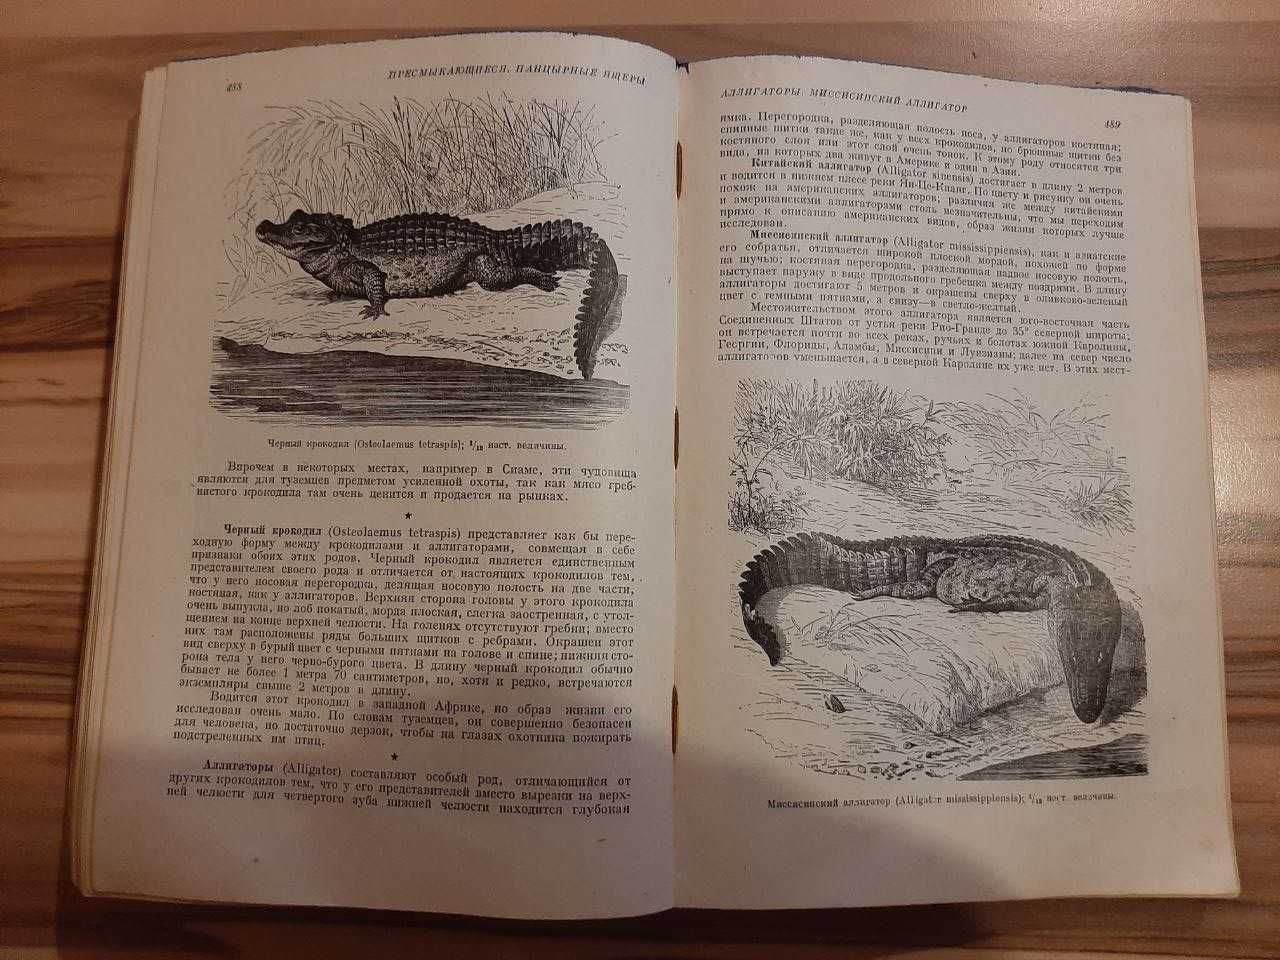 Антикварная Книга "Жизнь животных по А.Э. Брэму", Том I, 1931г.